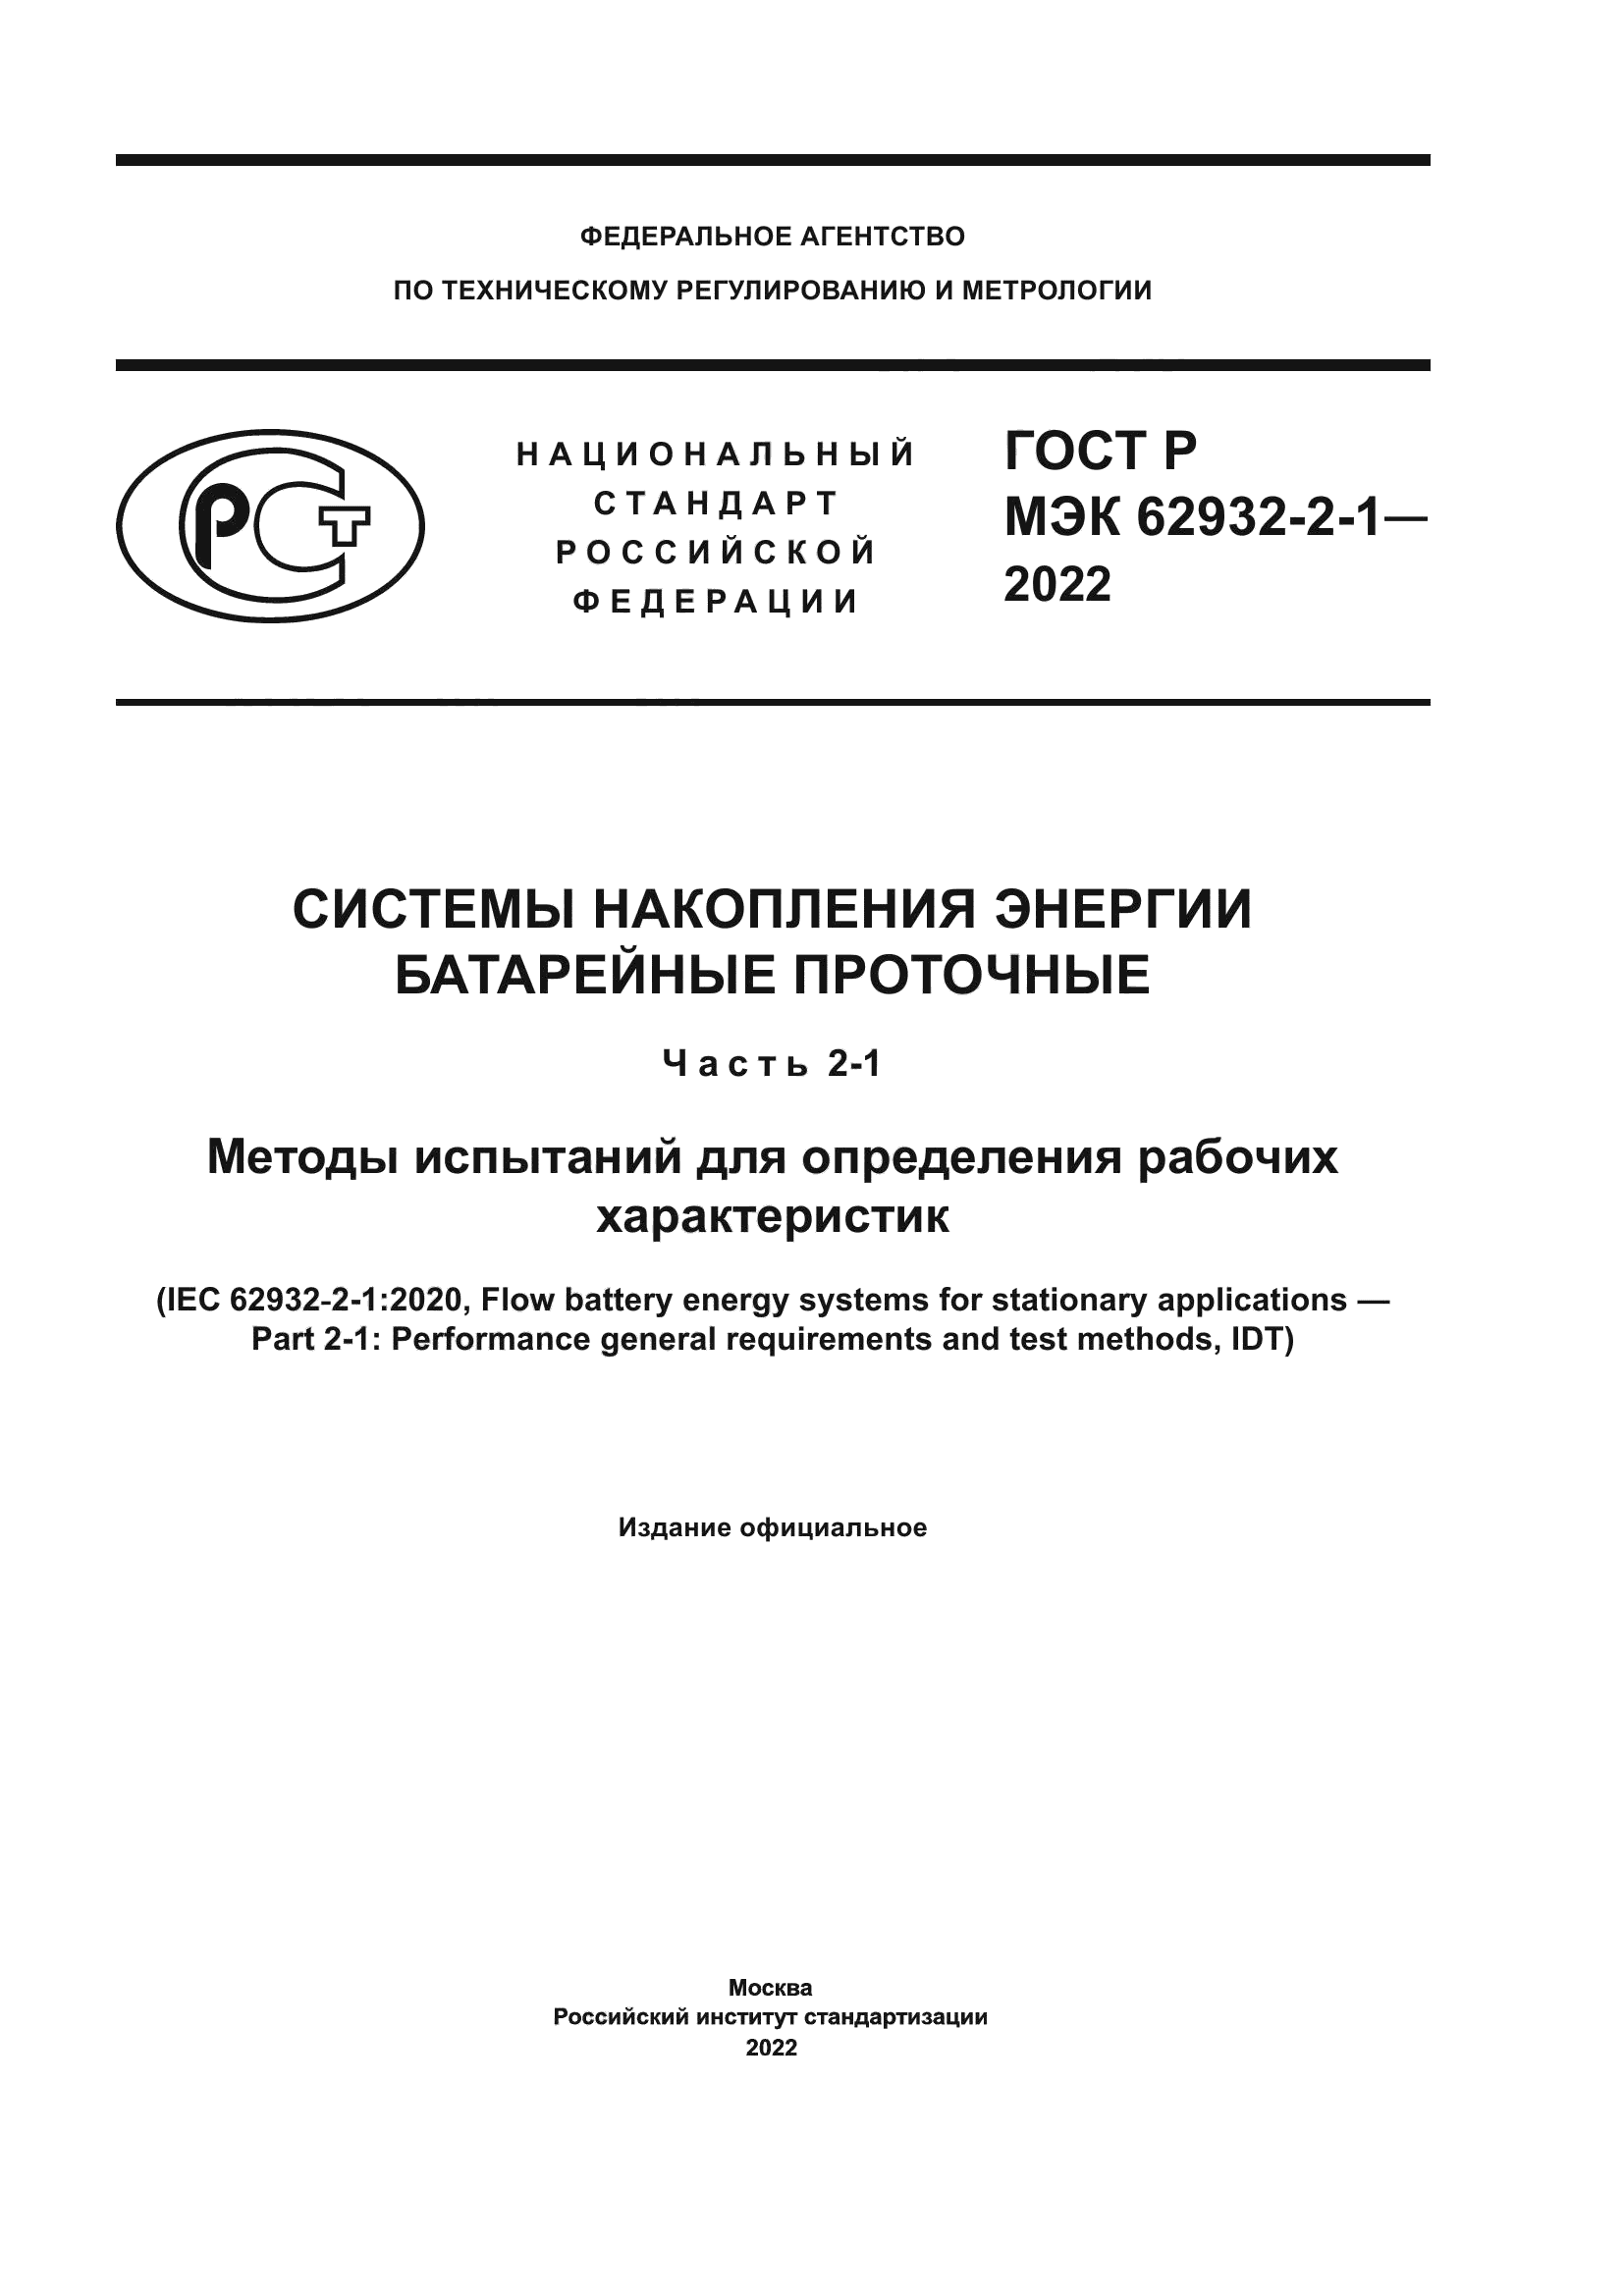 ГОСТ Р МЭК 62932-2-1-2022